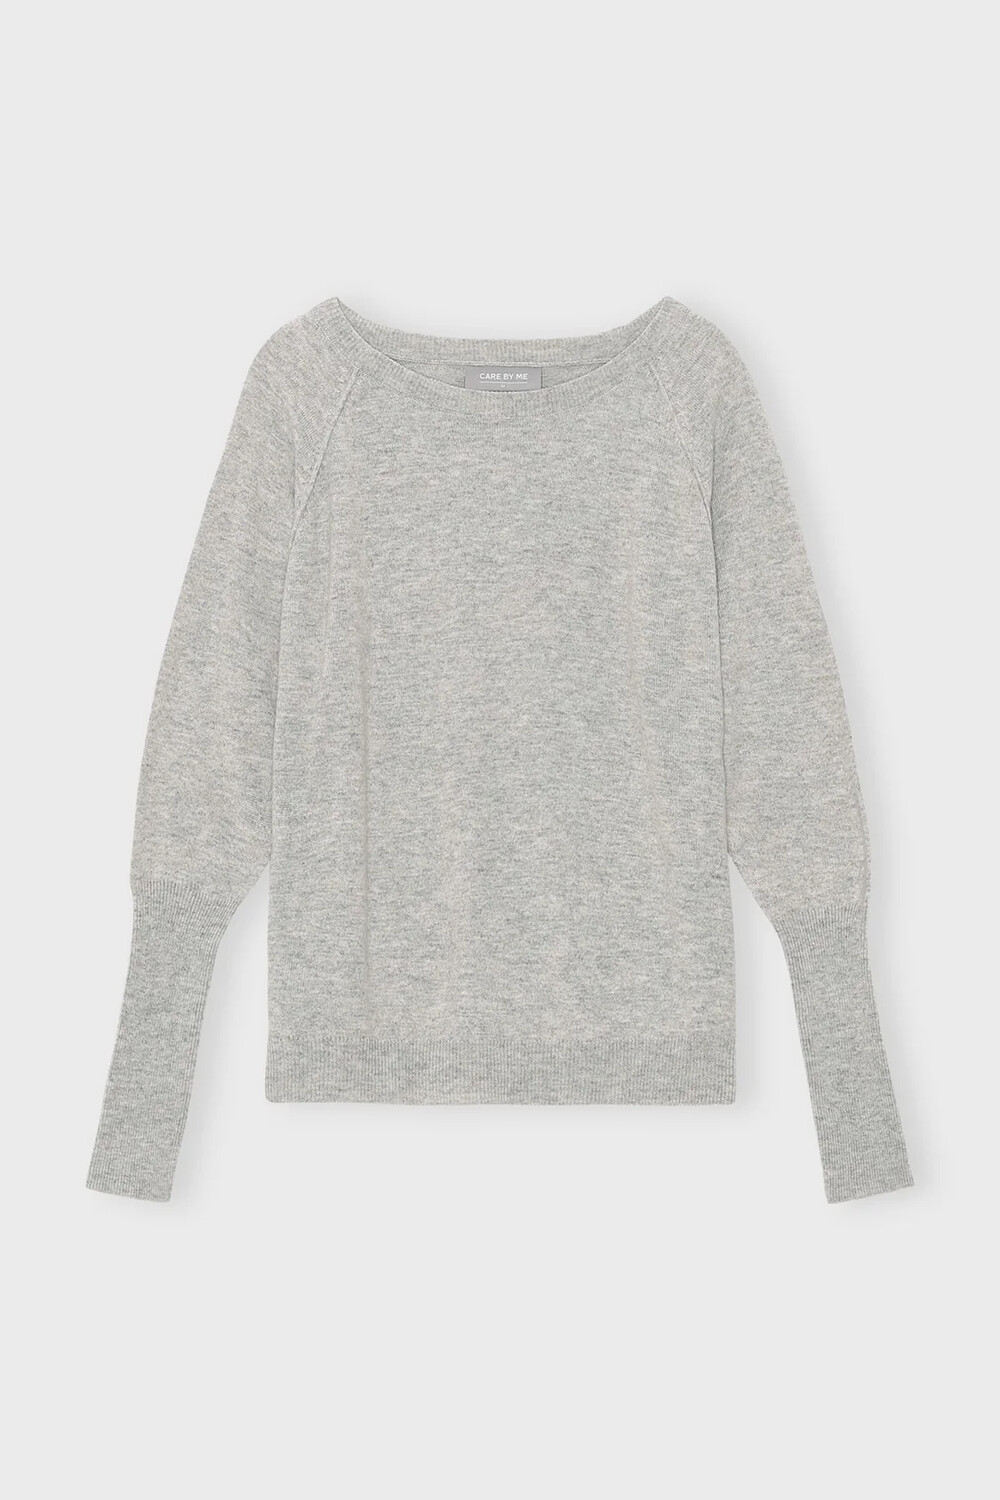 FAITH Sweater, light grey